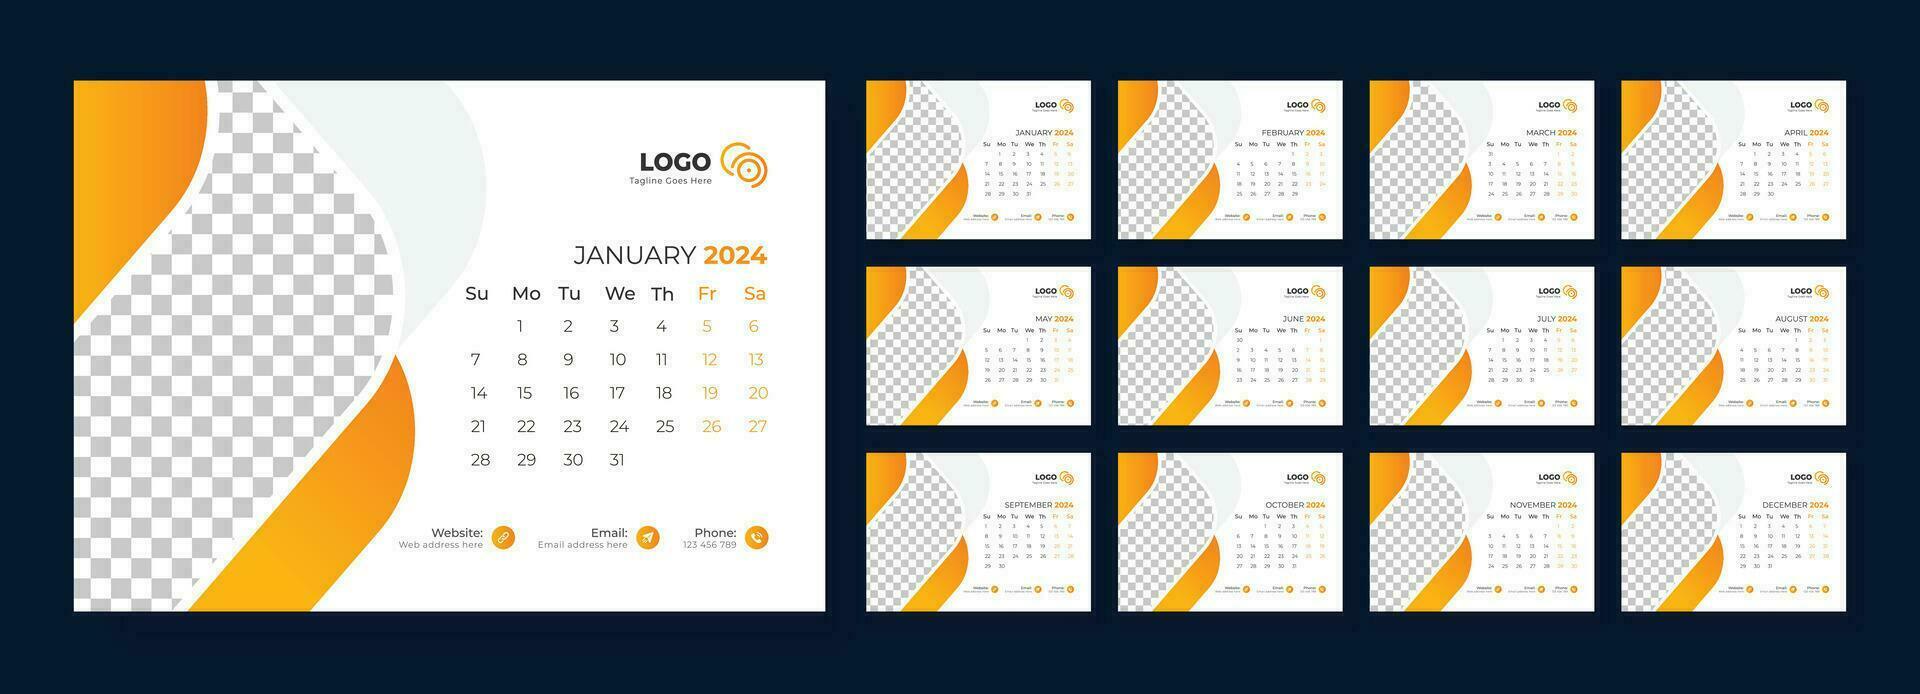 skrivbord kalender 2024 mall design, kontor kalender 2024, vecka börjar på söndag vektor